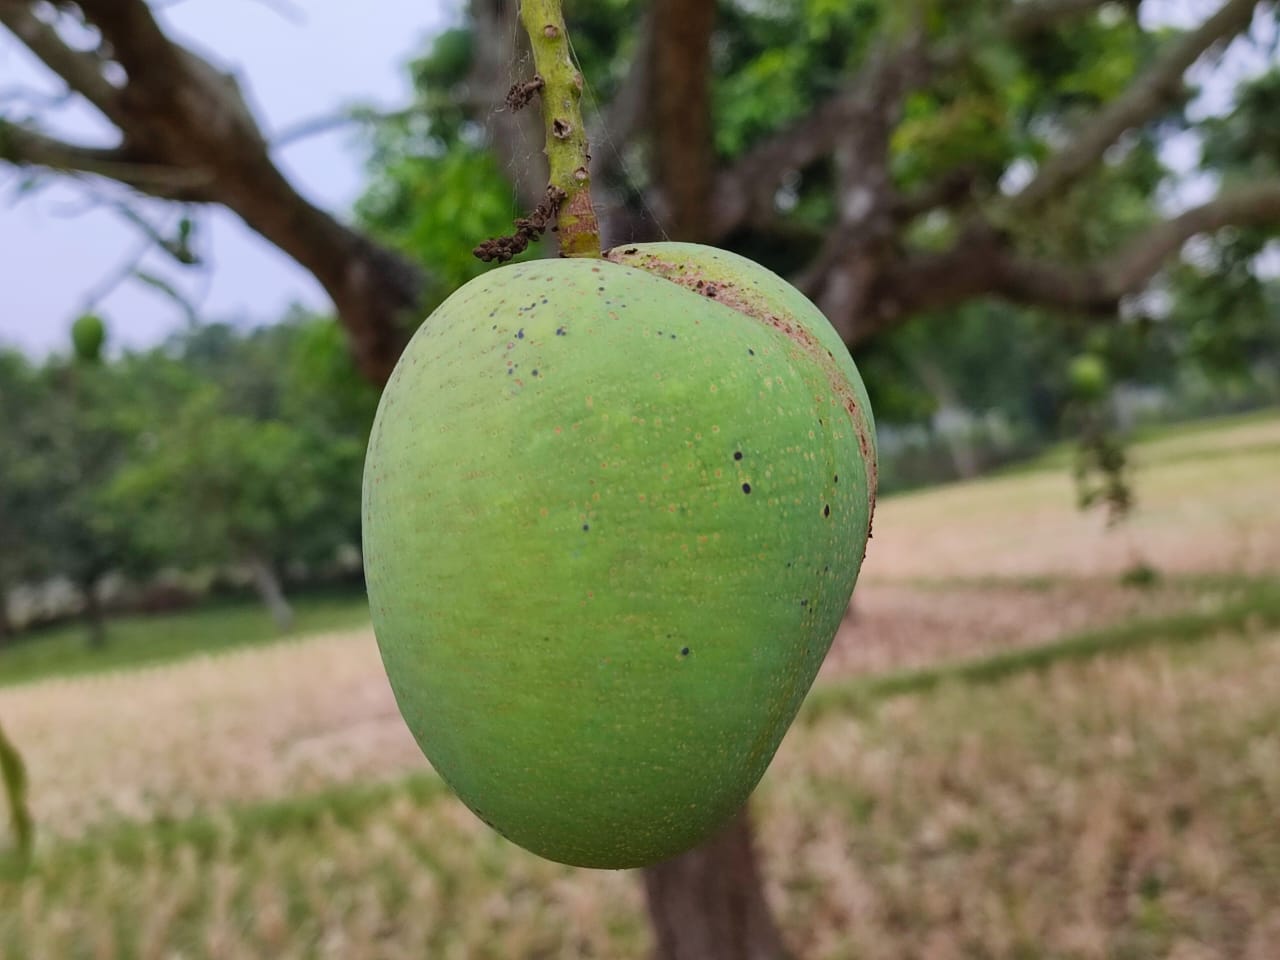 Himsagar Mango